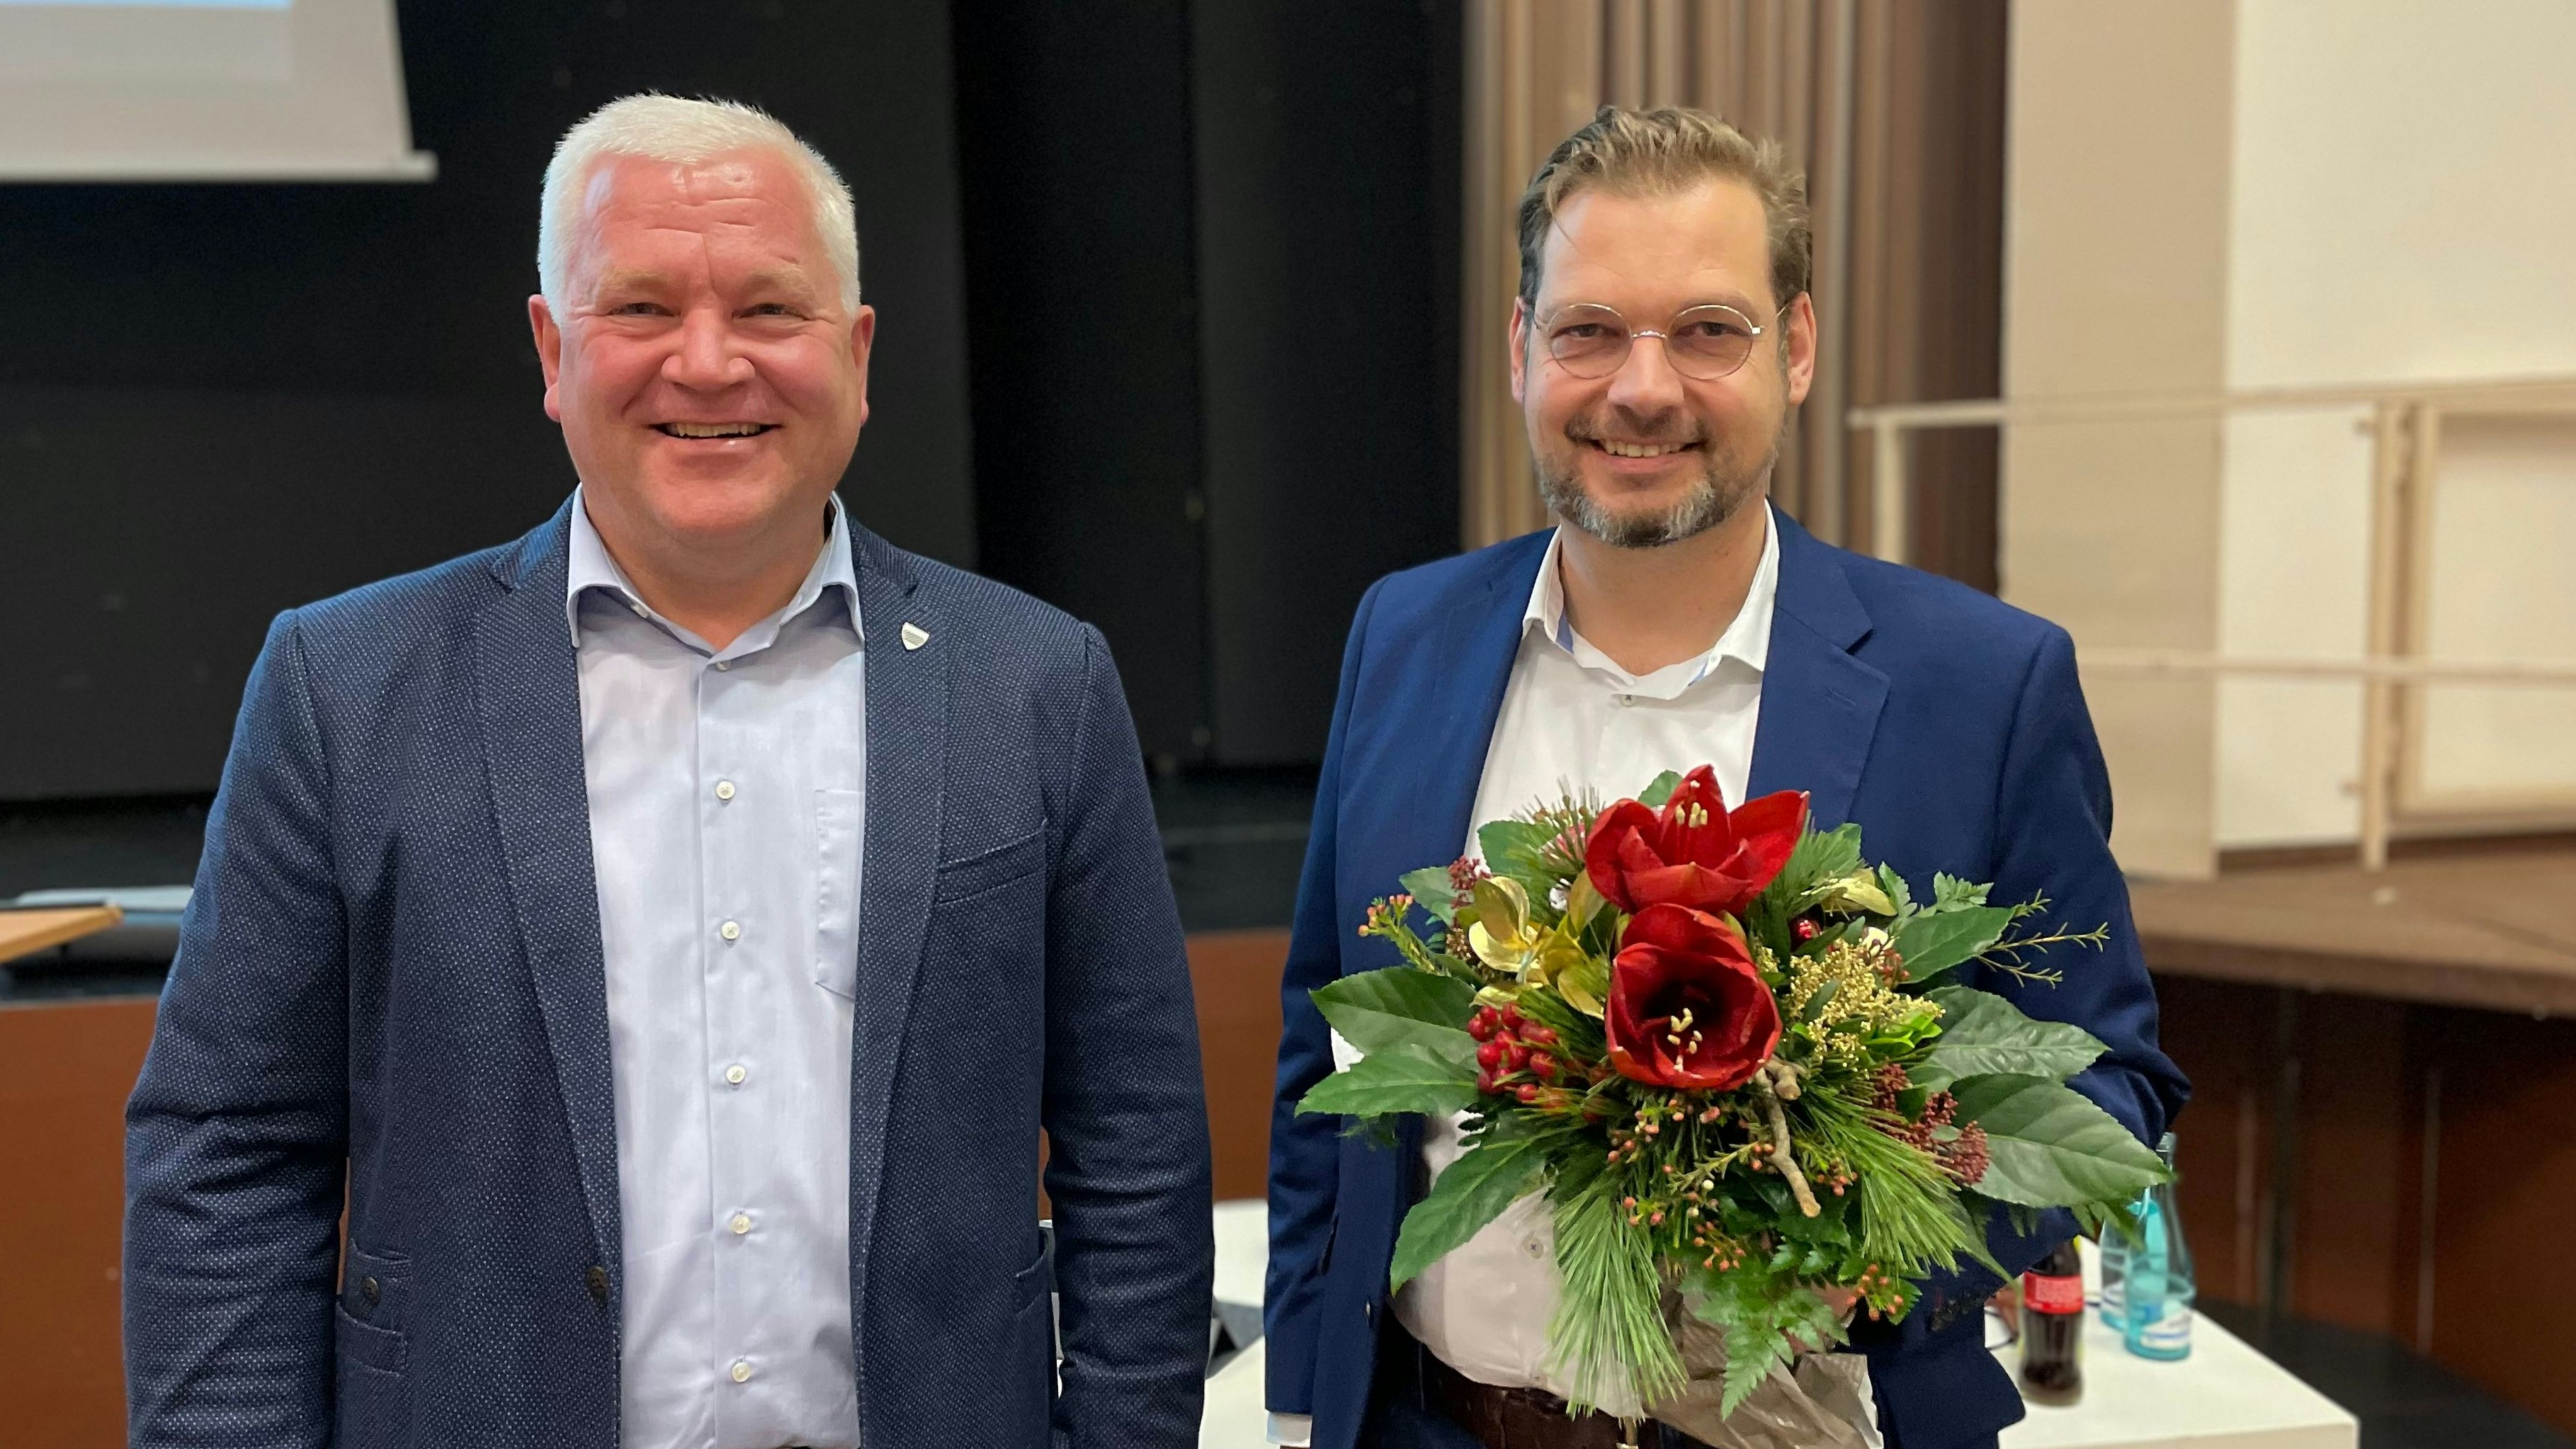 Blumen zur Wiederwahl (von rechts): Thomas Willen bleibt Erster Stadtrat in Löningen. Erster Gratulant war Bürgermeister Burkhard Sibbel. Foto: Meyer